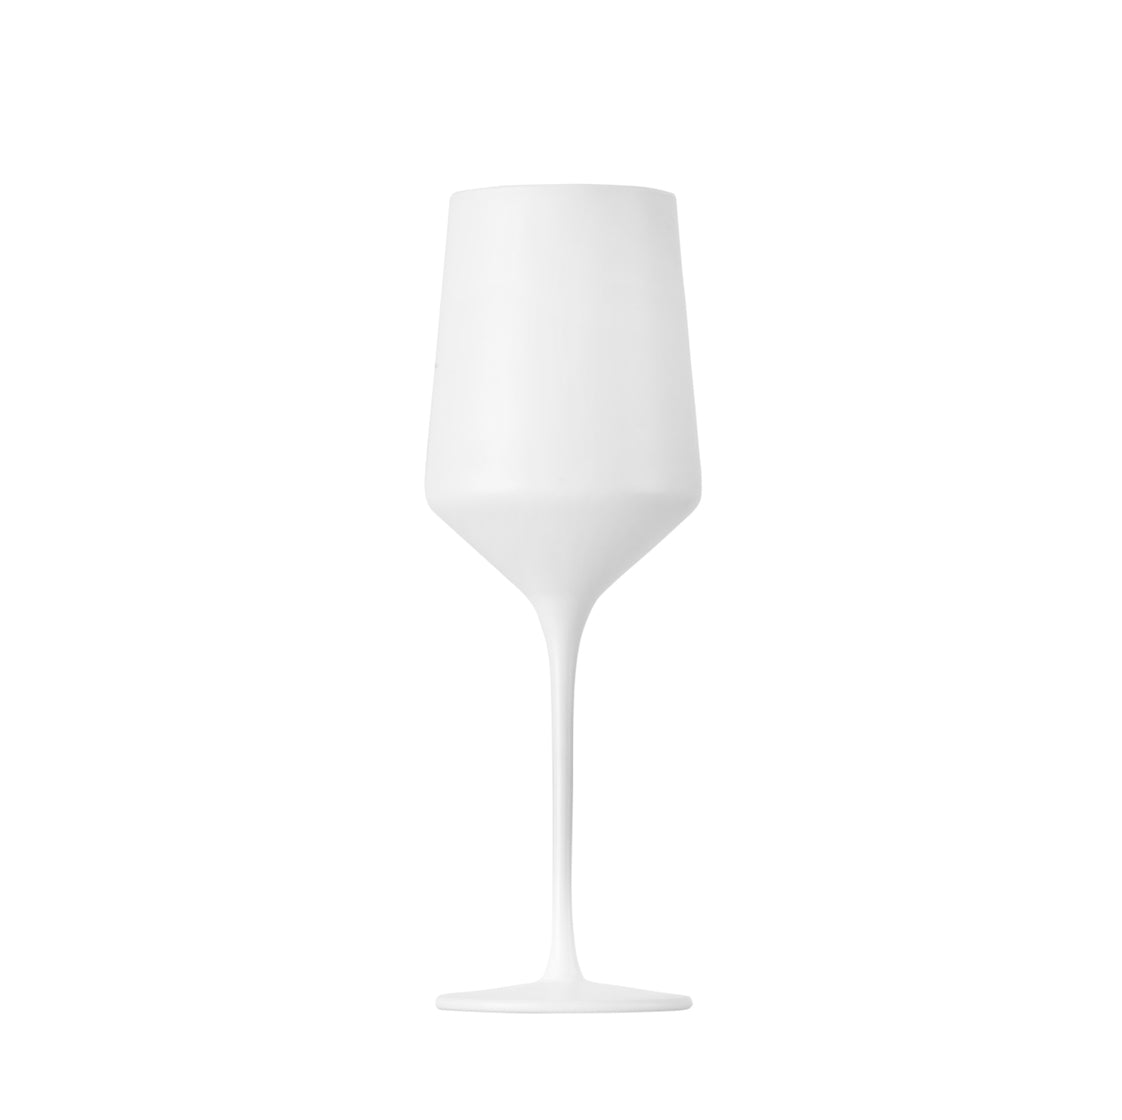 Vikko Decor - White Matte, Hand Blown Wine Glasses, Set of 6